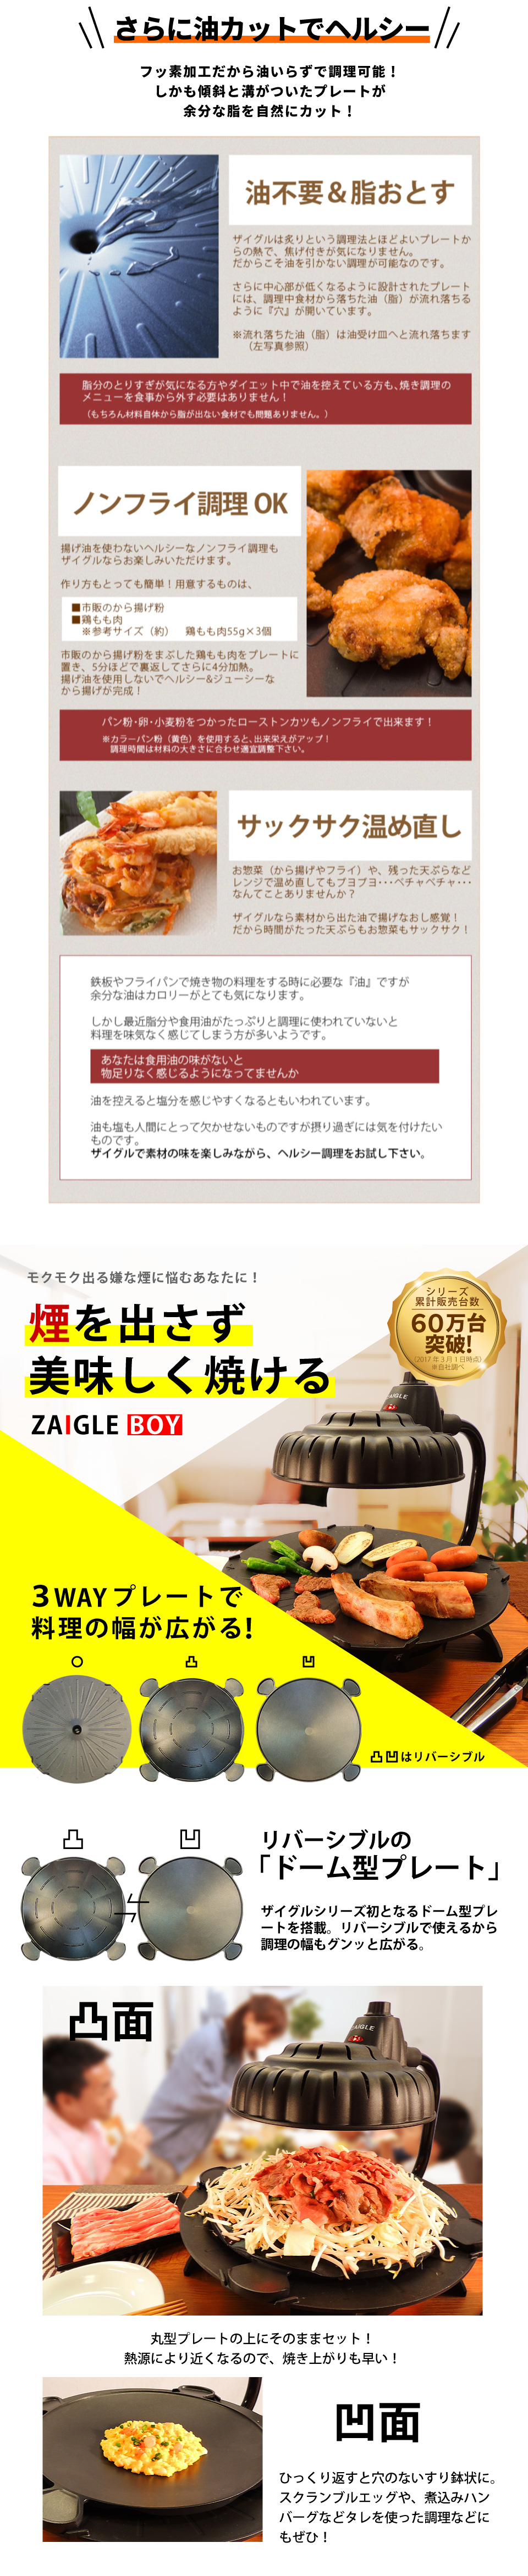 ザイグルボーイ2（ZAIGLE BOY2）製品詳細 ザイグル公式サイト